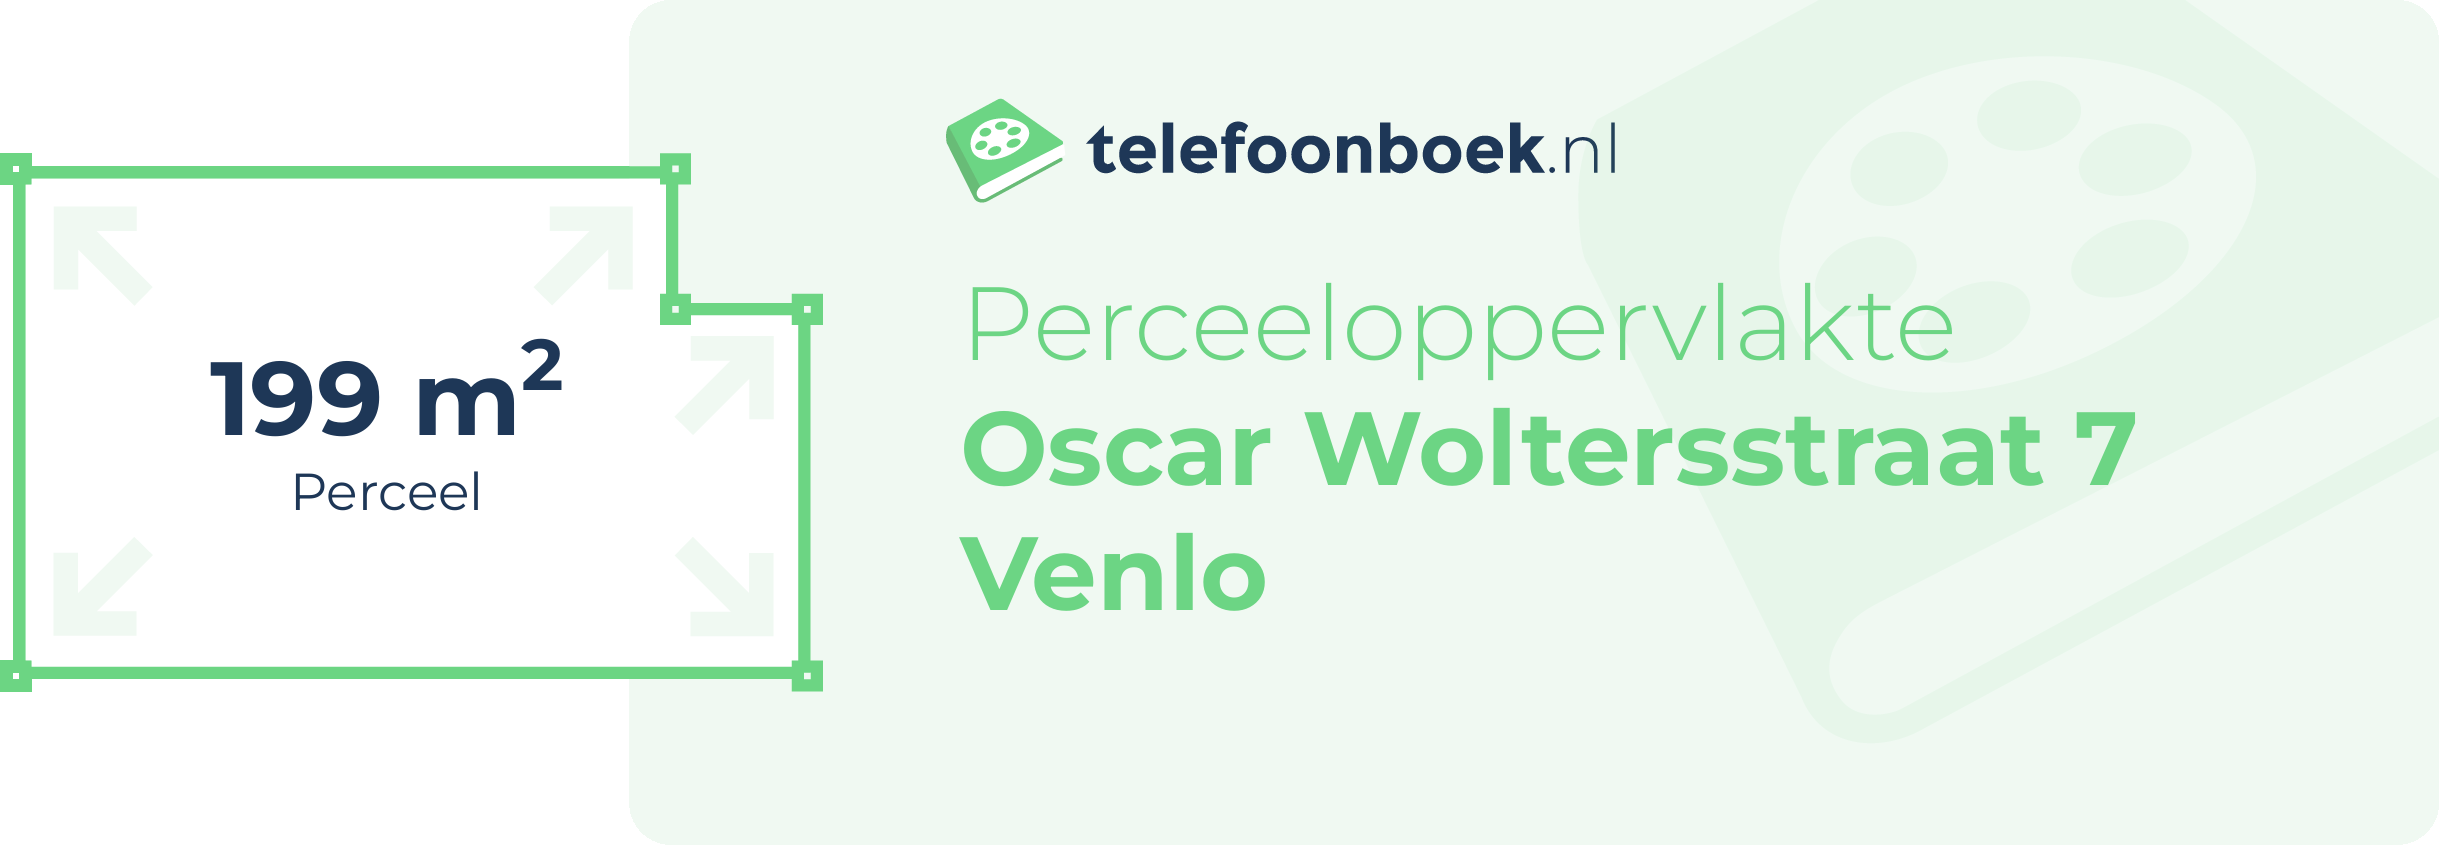 Perceeloppervlakte Oscar Woltersstraat 7 Venlo